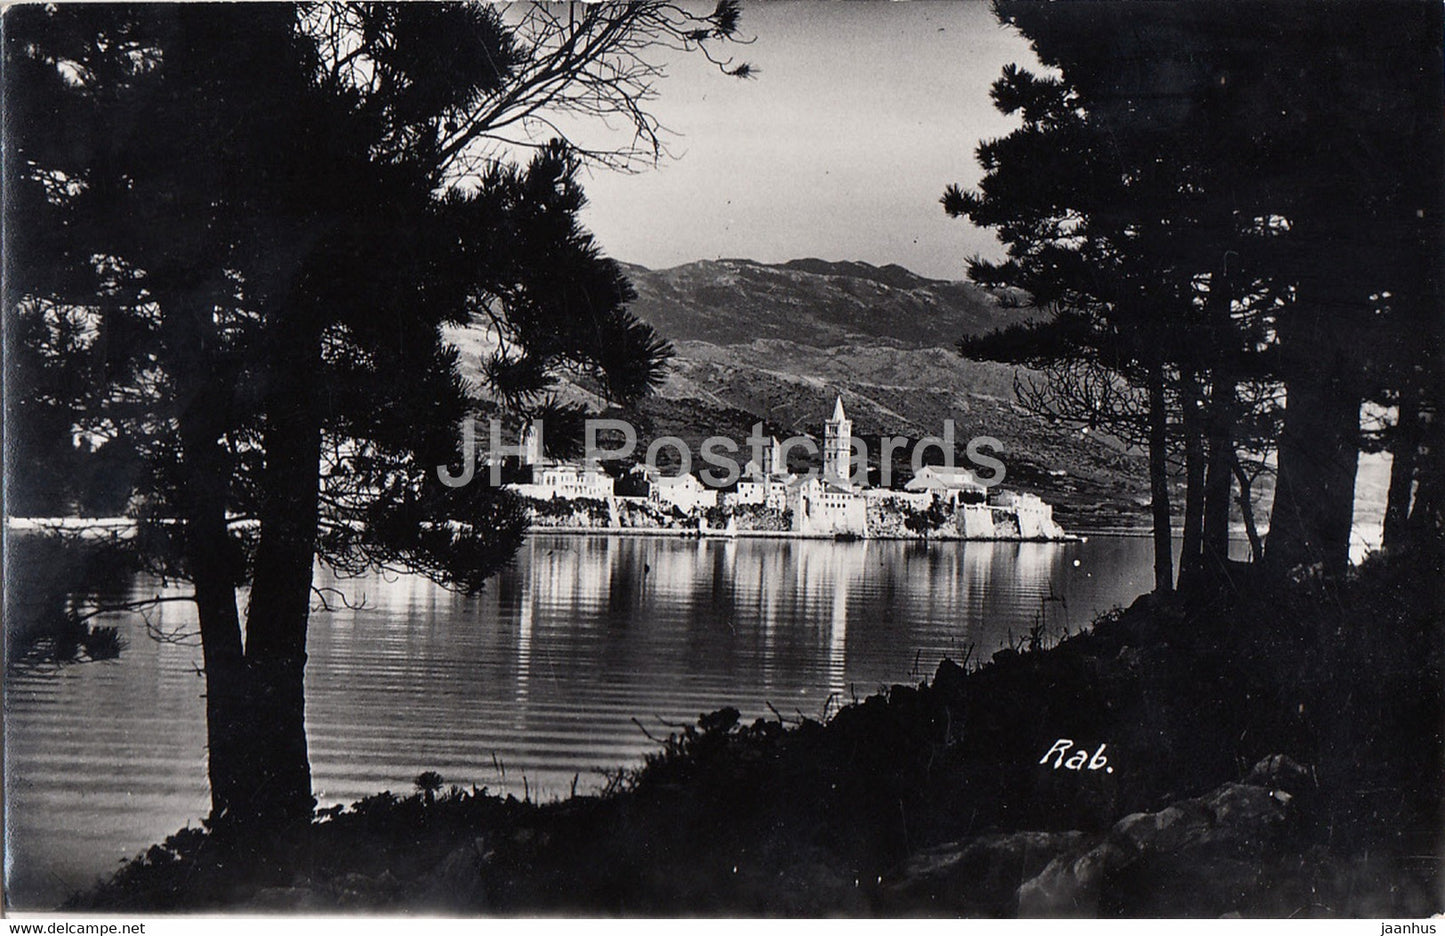 Rab - old postcard - 1939 - Croatia - used - JH Postcards